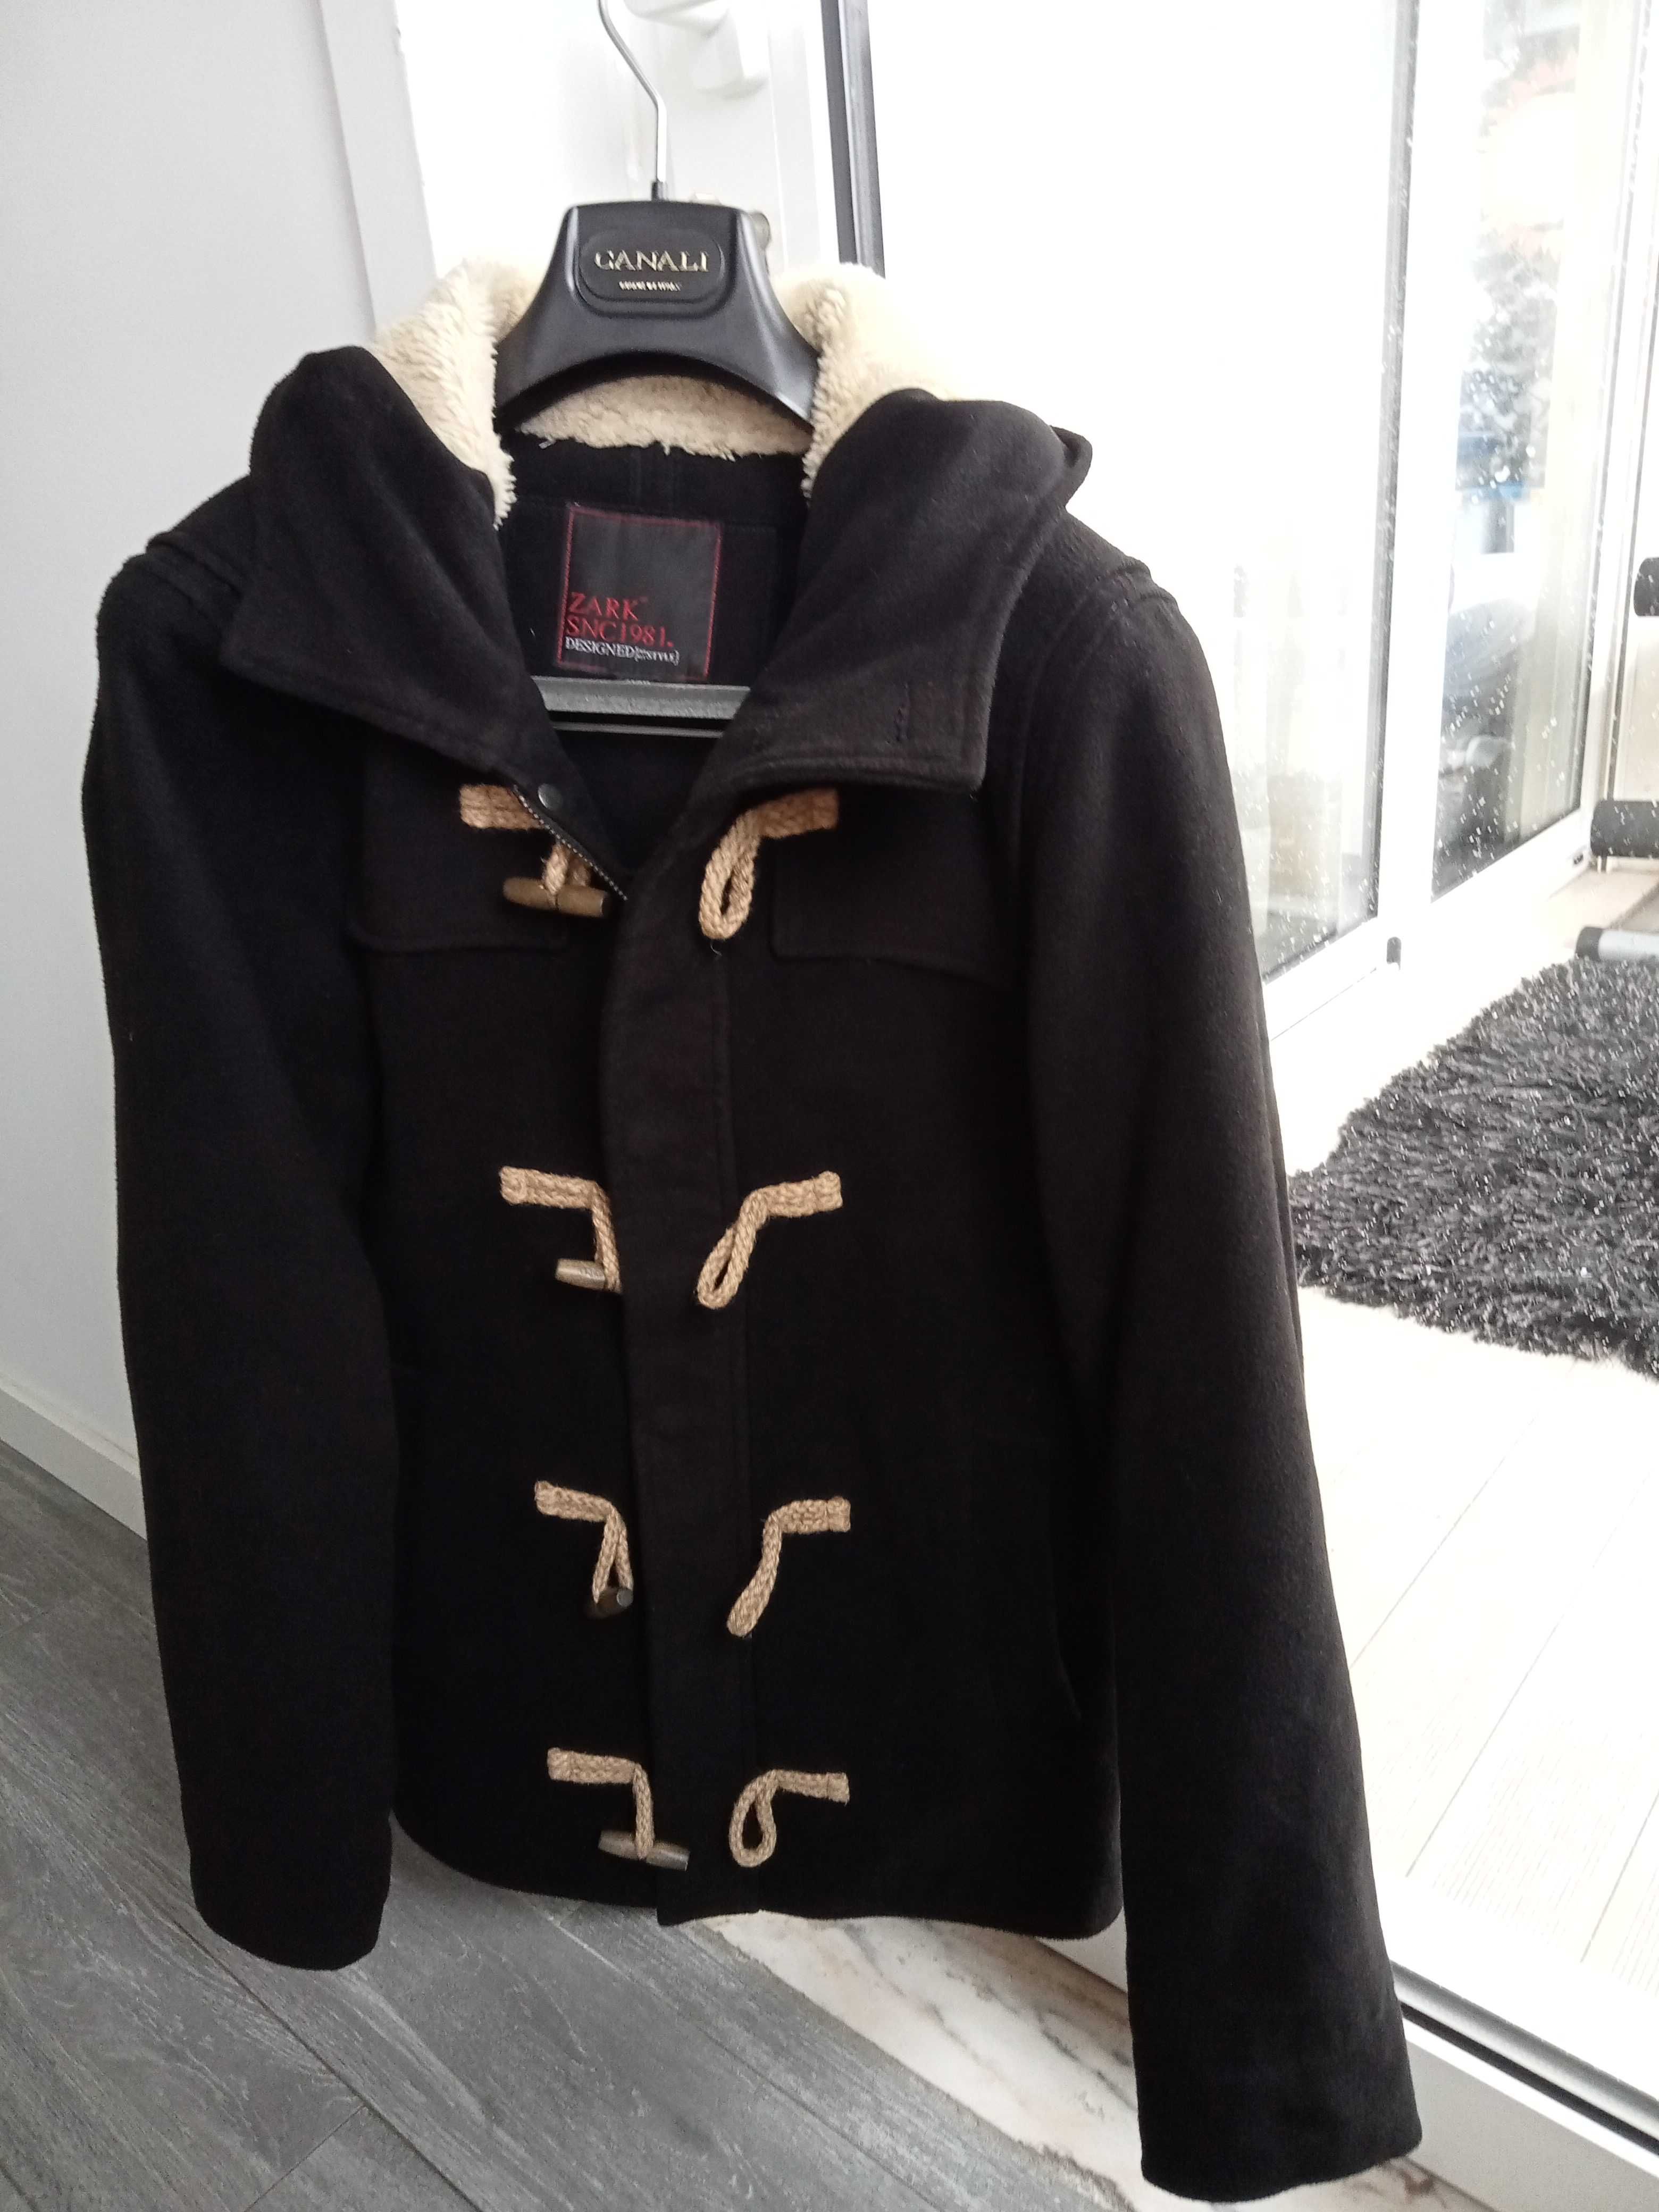 Vendo casaco preto com capuz, estilo canadiana, semi-novo, tamanho M